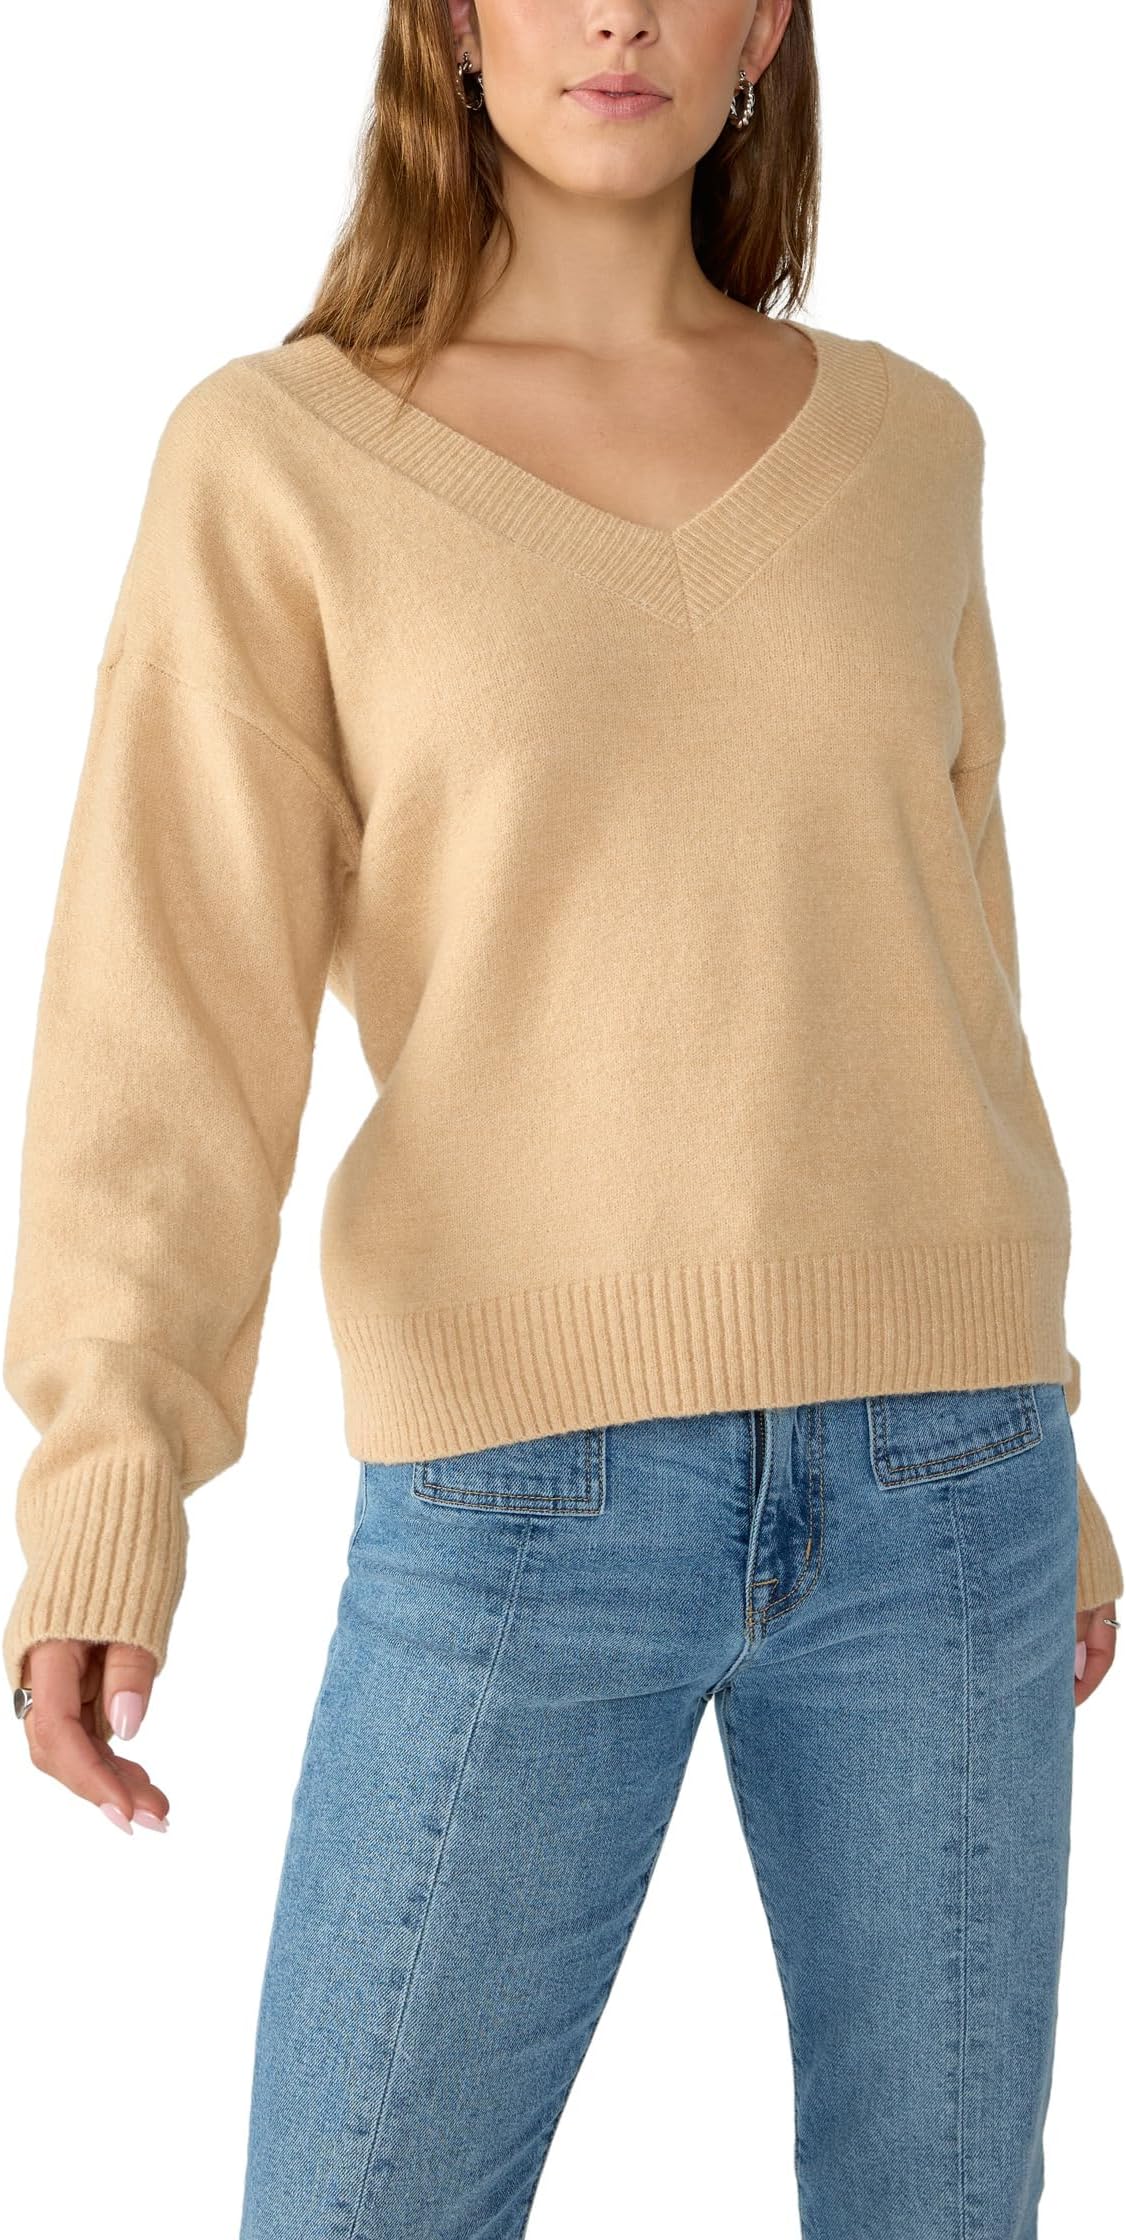 Легкий легкий пуловер с V-образным вырезом Sanctuary, цвет Roasted Cappuccino magix roasted